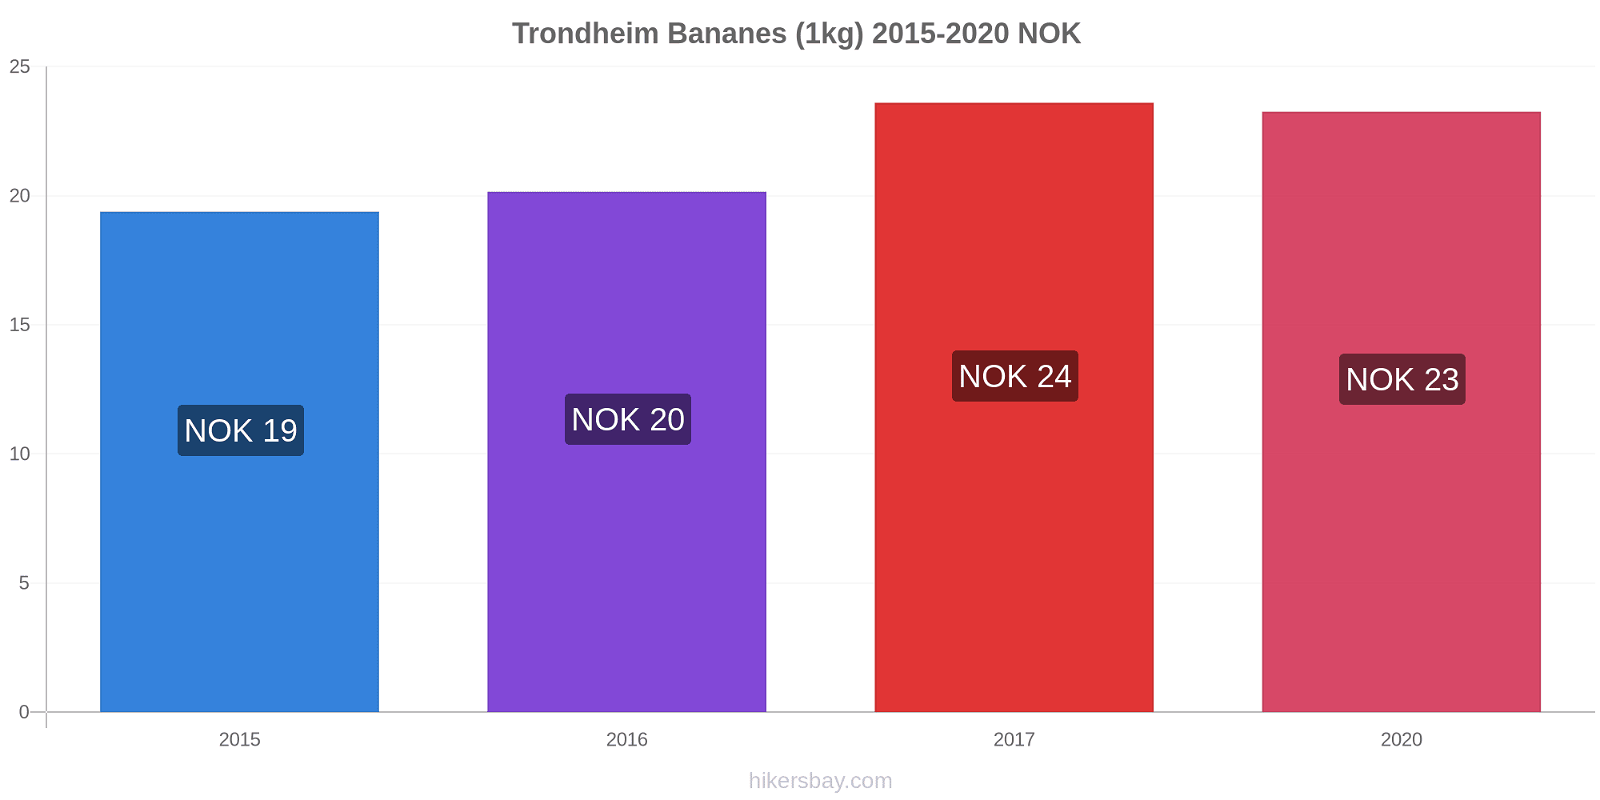 Trondheim changements de prix Bananes (1kg) hikersbay.com